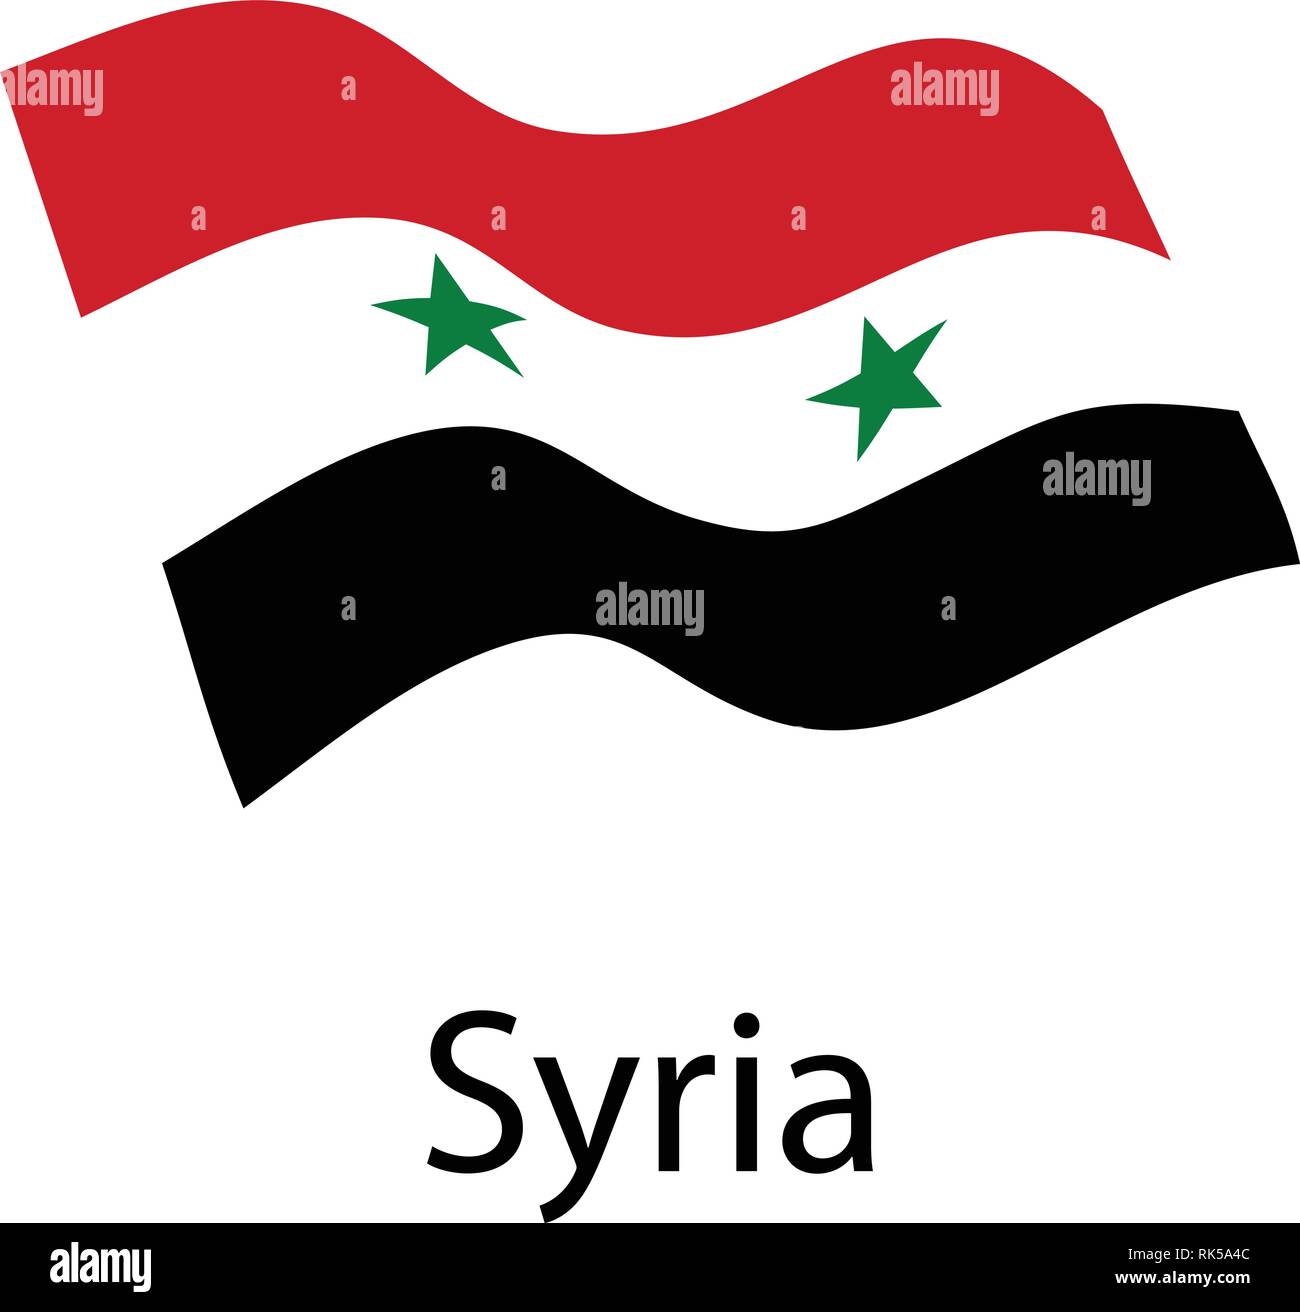 https://c8.alamy.com/comp/RK5A4C/vector-national-flag-of-syria-syrian-arab-republic-RK5A4C.jpg